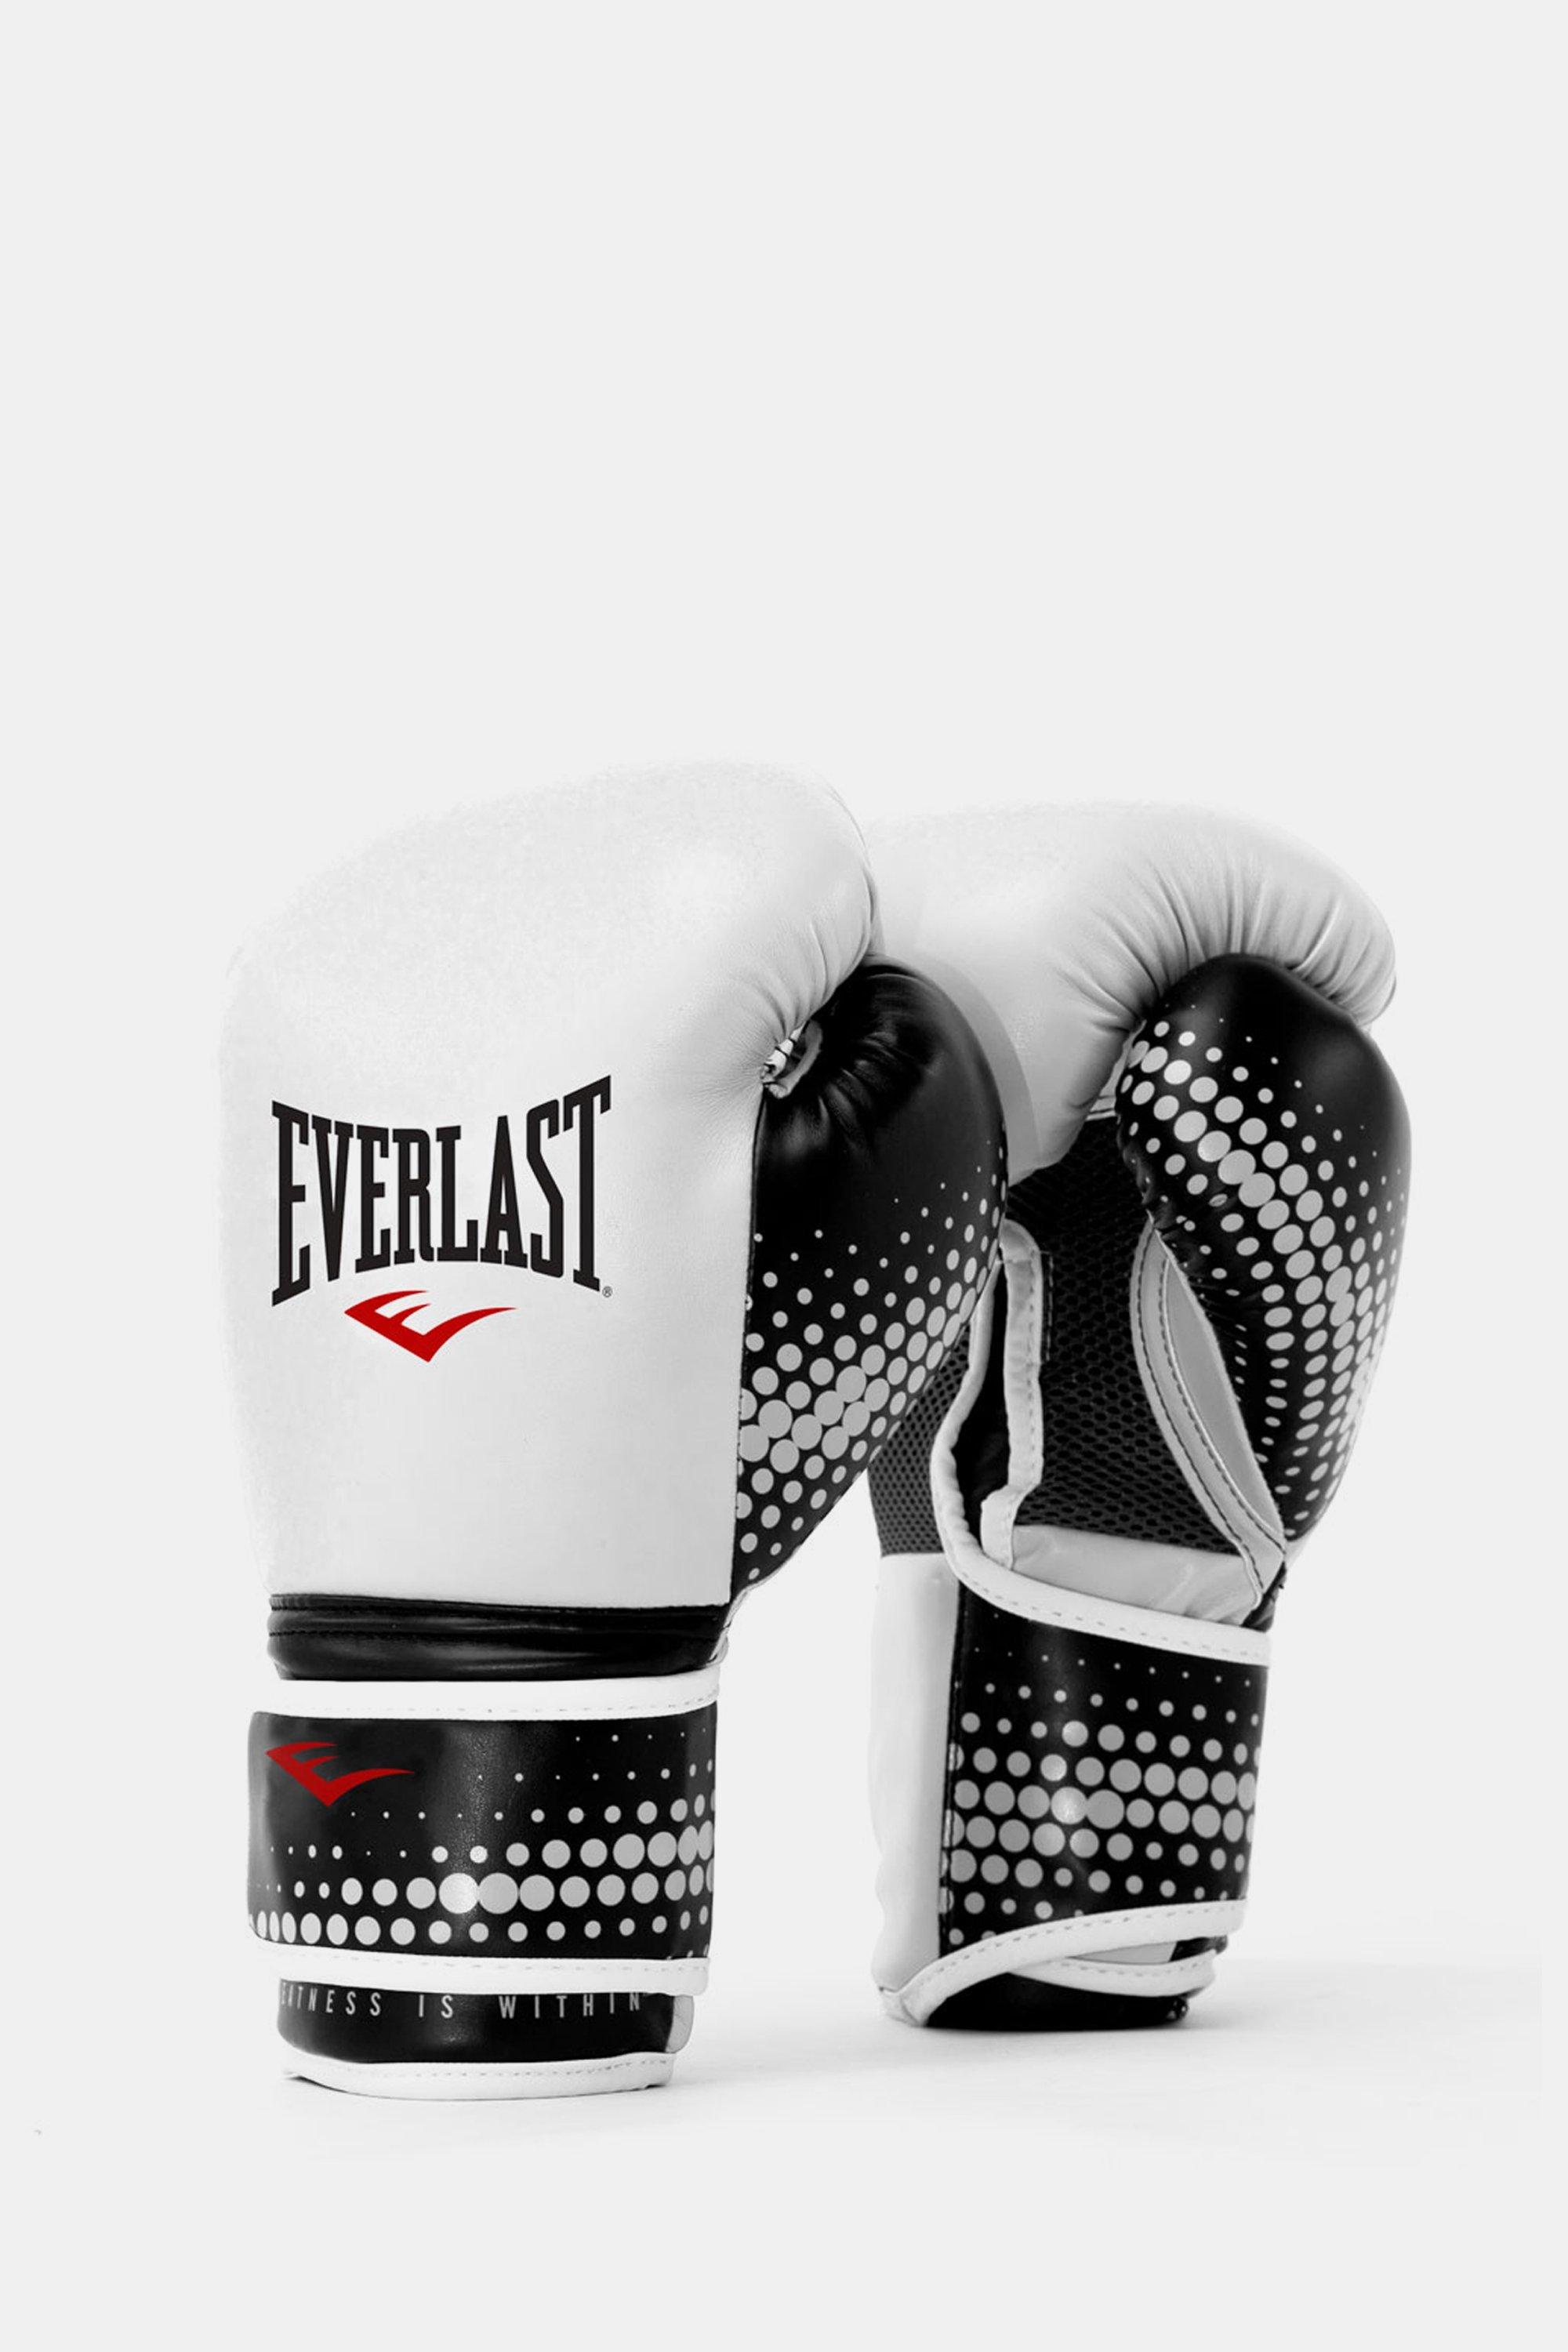 Everlast Spark Boxing Gloves